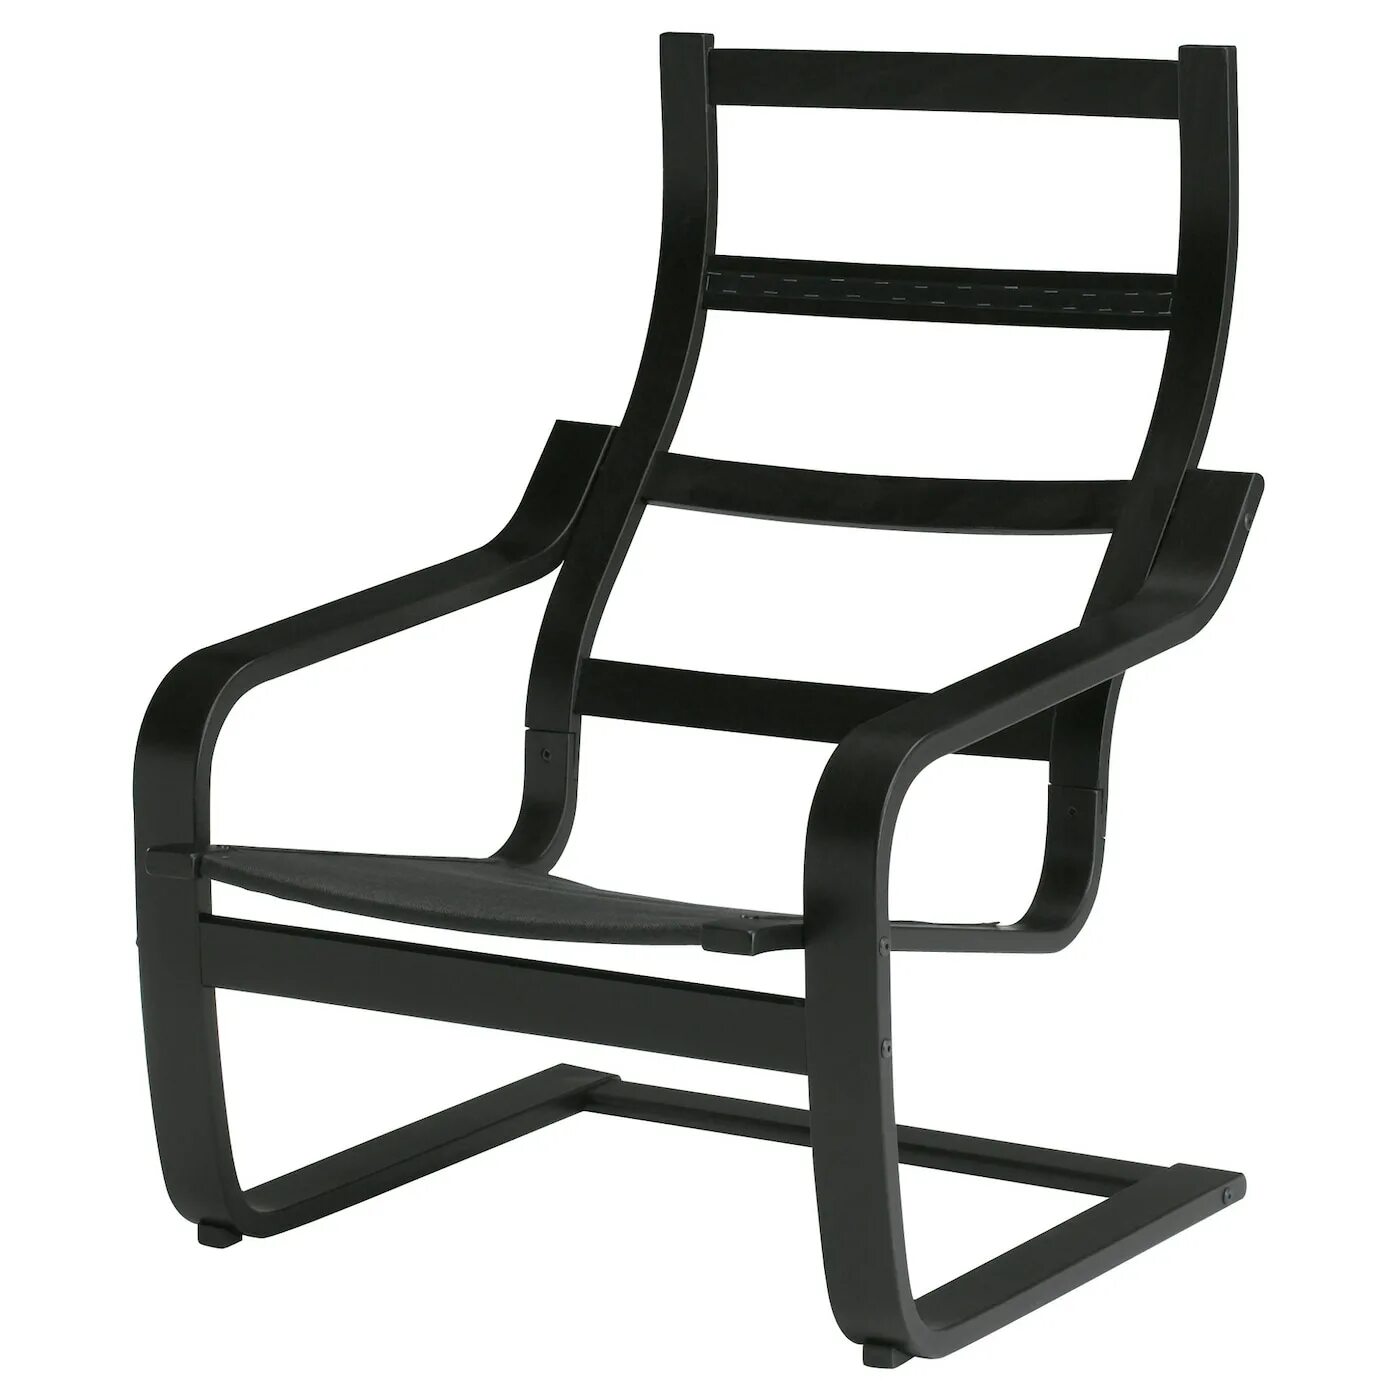 Легкое кресло 7 букв. Кресло ikea ПОЭНГ. Ikea Poang кресло. Каркас кресла ПОЭНГ икеа. Кресло Poang ПОЭНГ икеа.